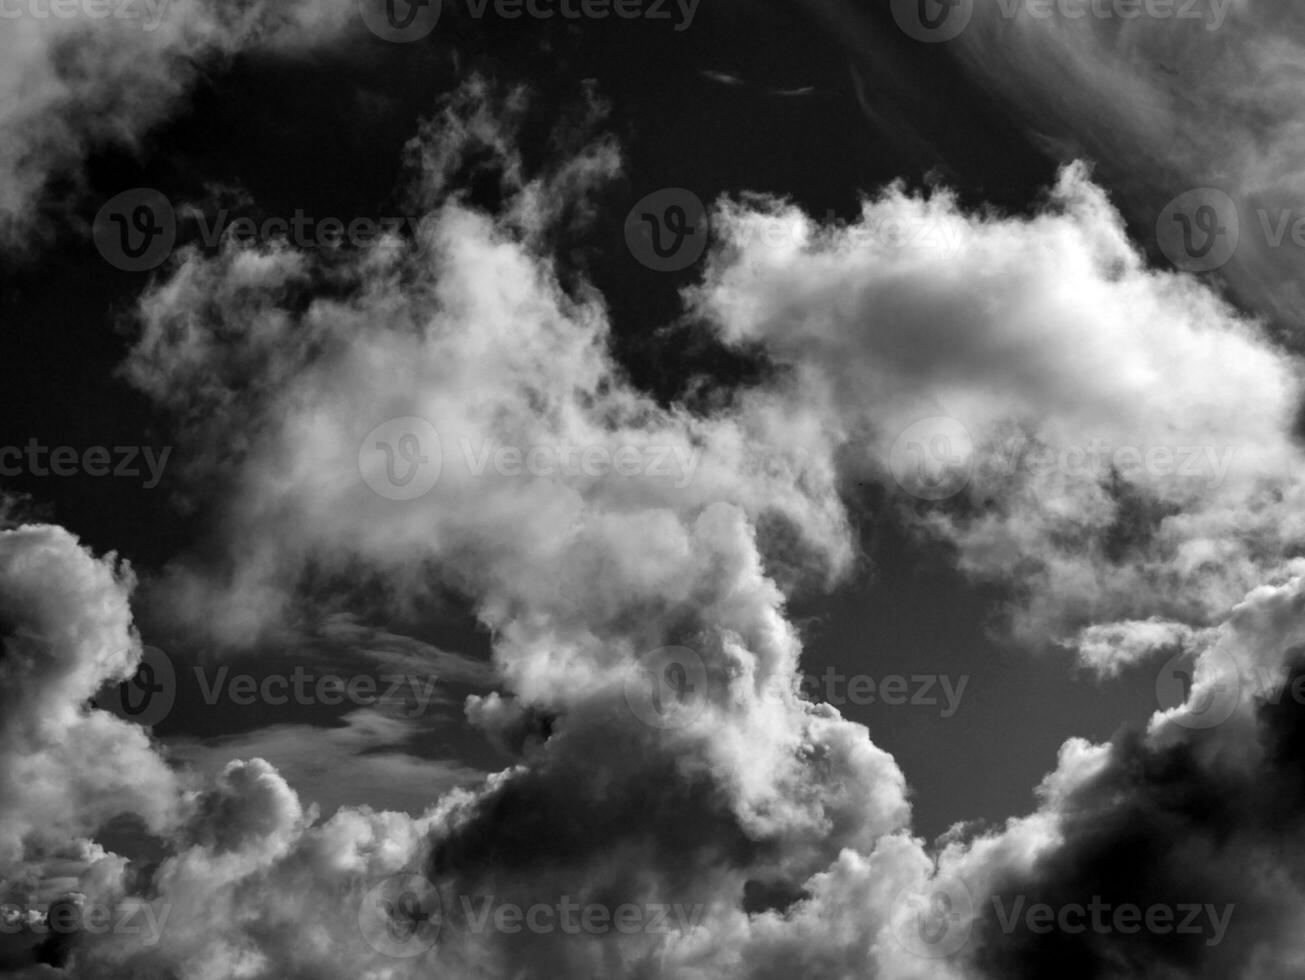 zwart en wit mooi lucht achtergrond foto